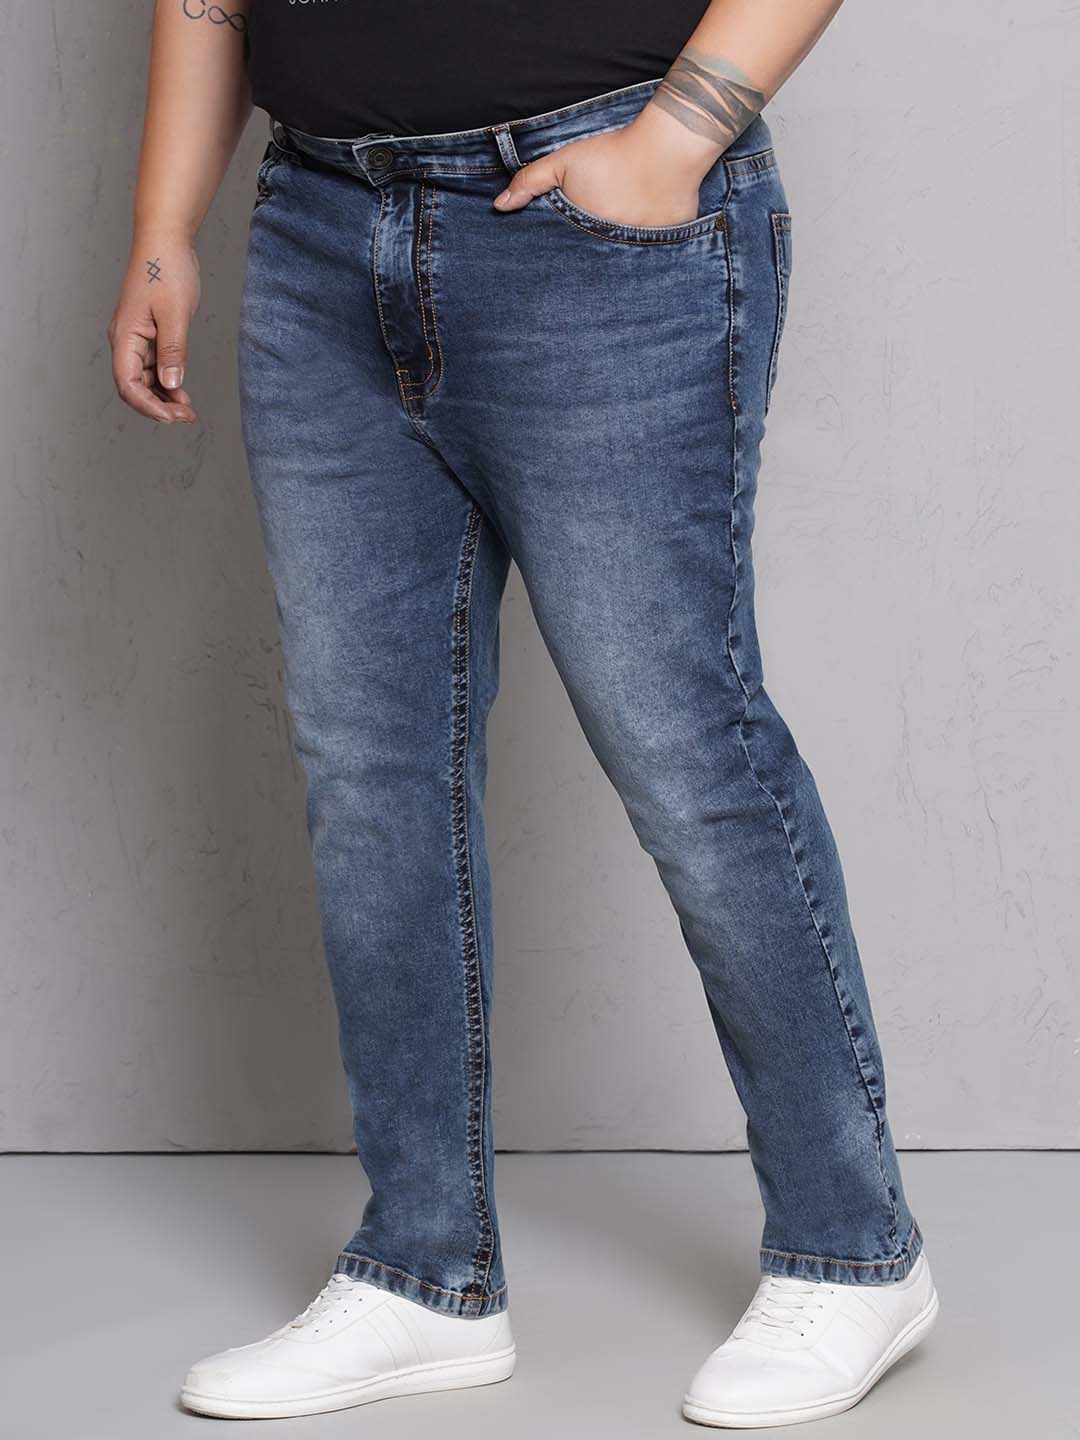 bottomwear/jeans/JPJ27116/jpj27116-4.jpg